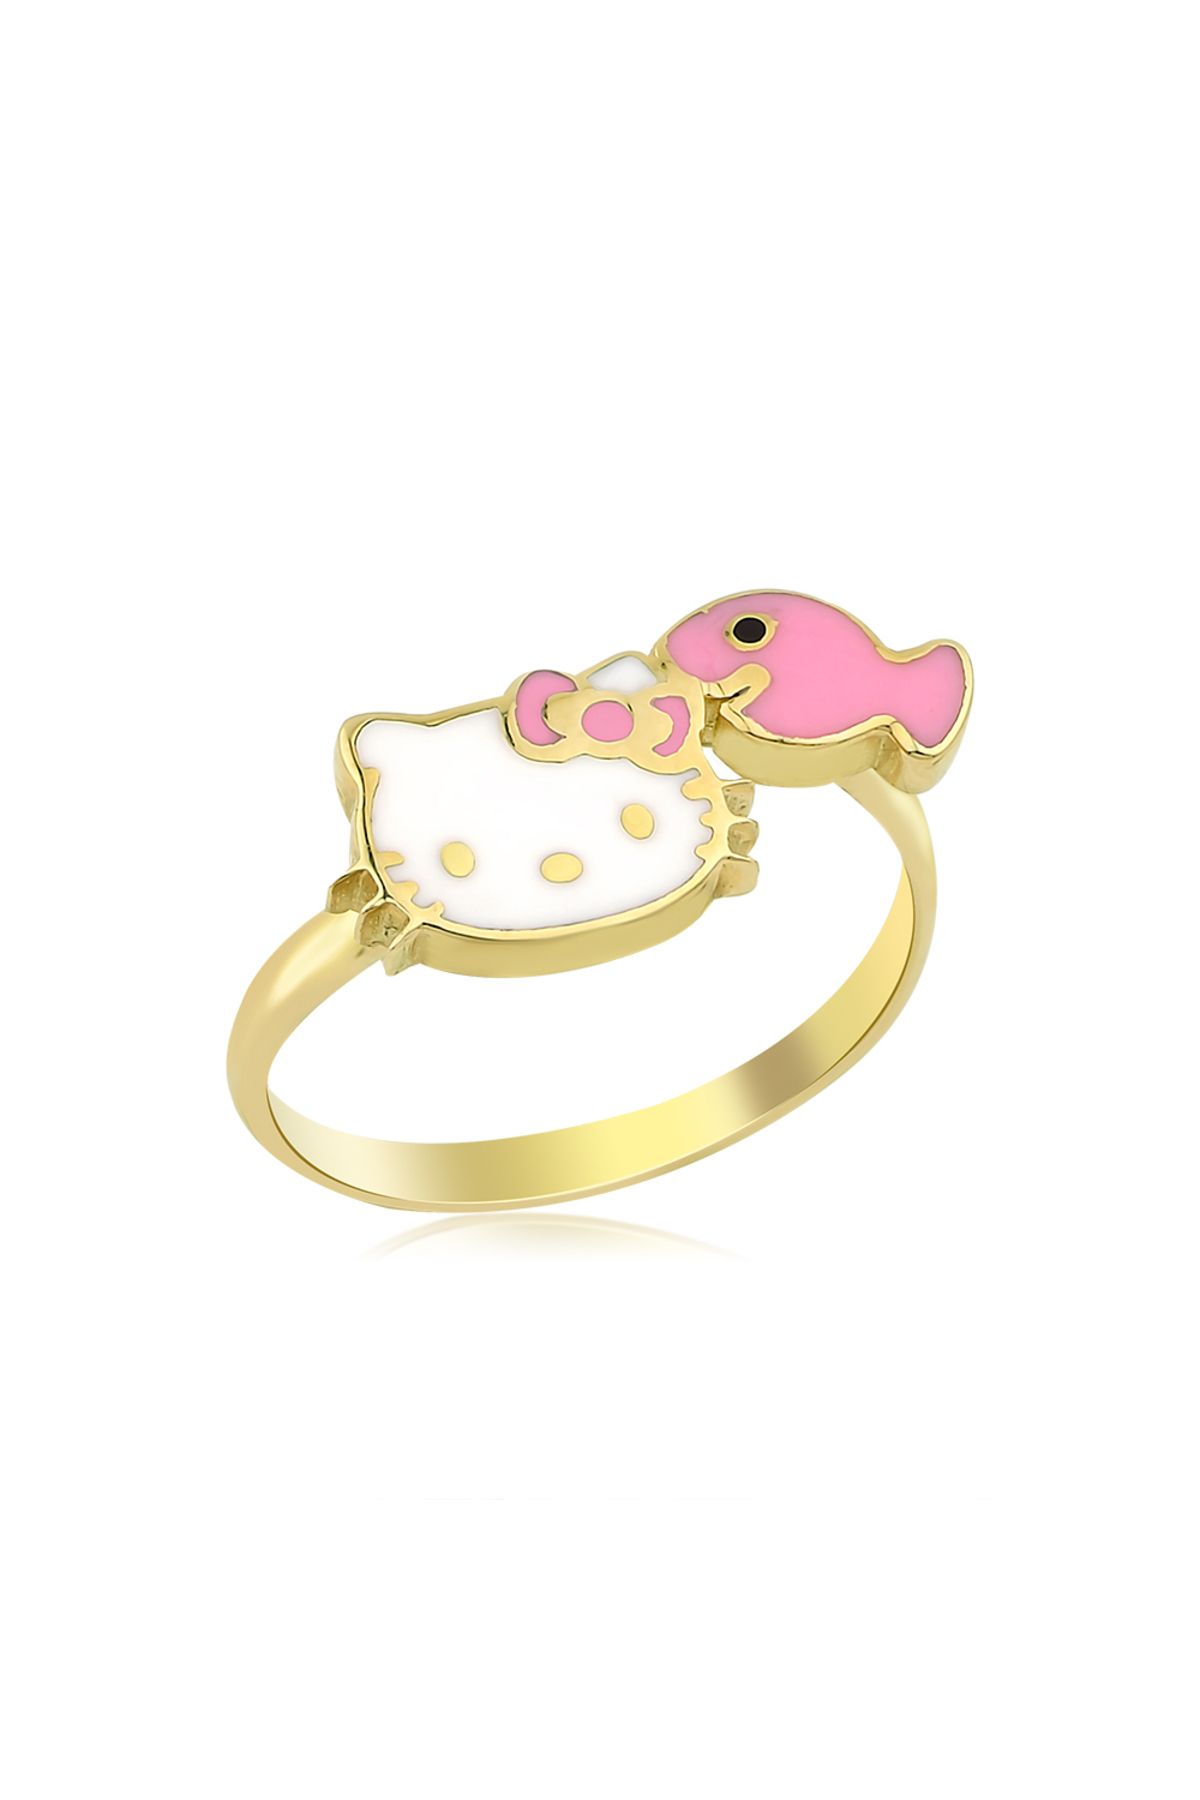 Hello Kitty Altın Yüzük Yz0356